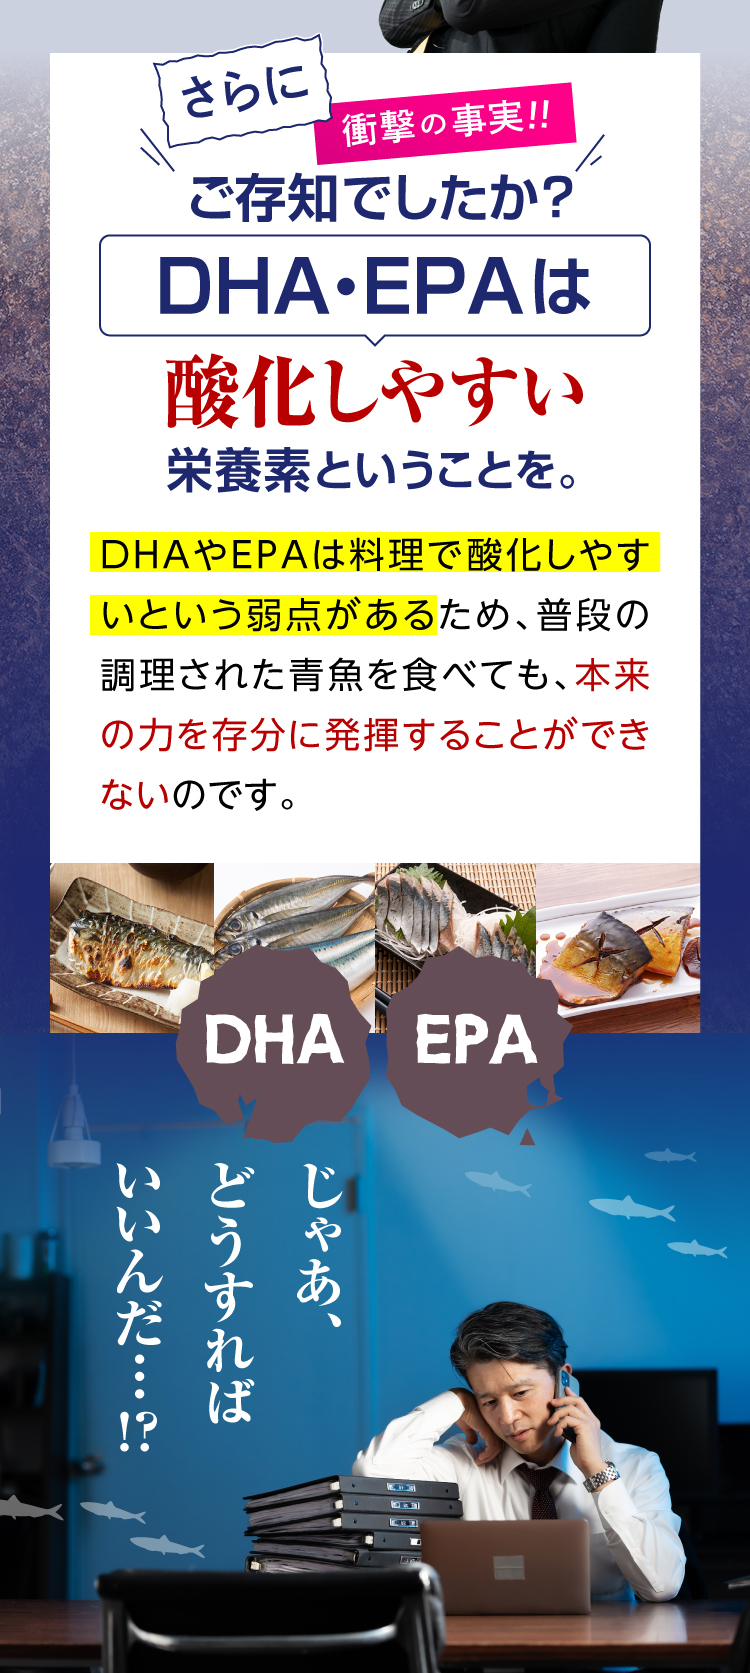 さらにDHA・EPAは酸化しやすい栄養素です